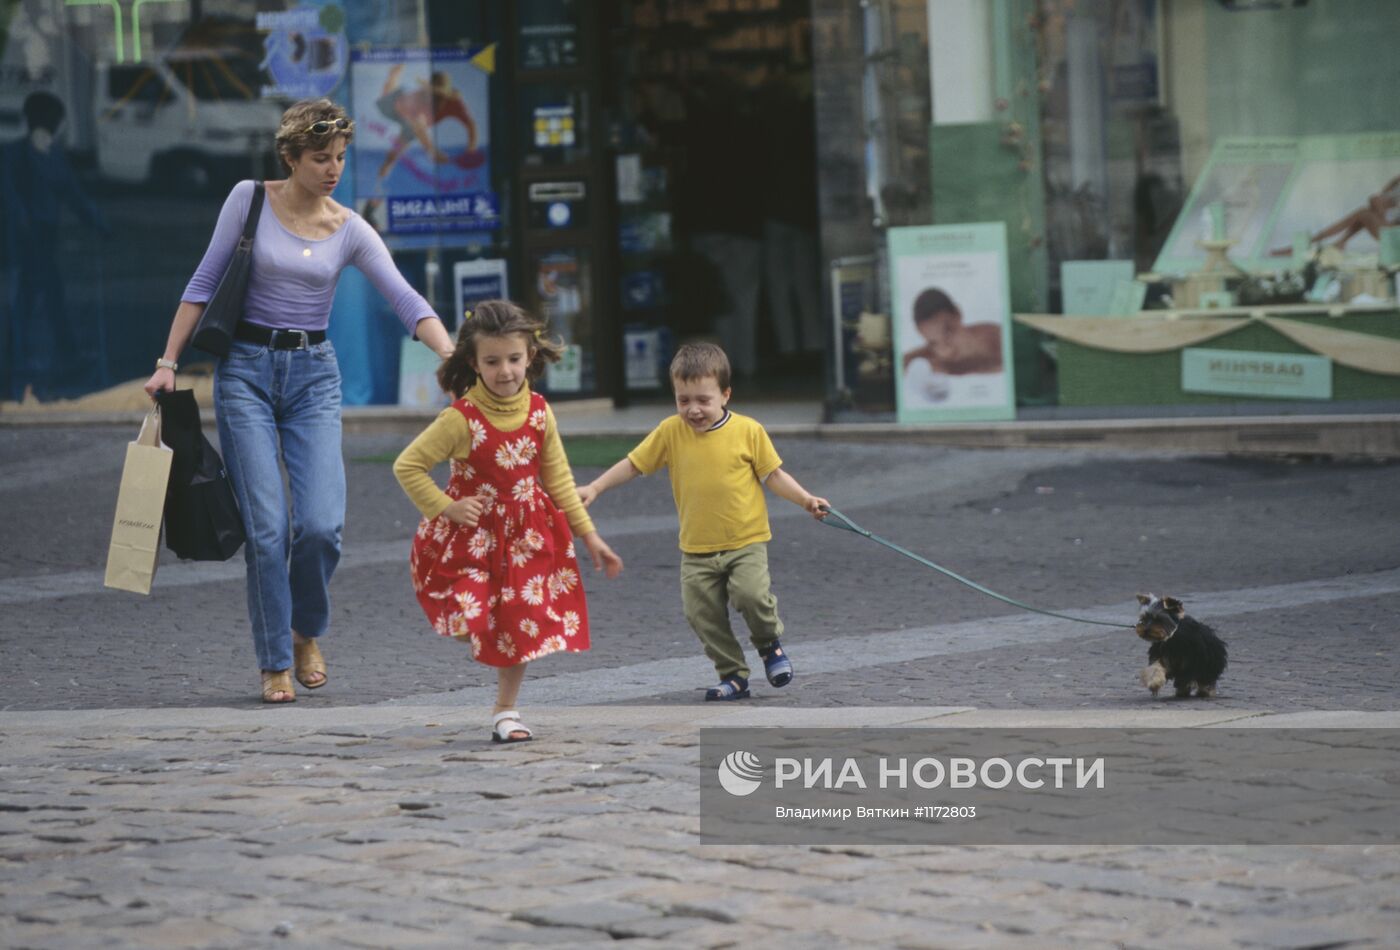 Парижанка на прогулке с детьми